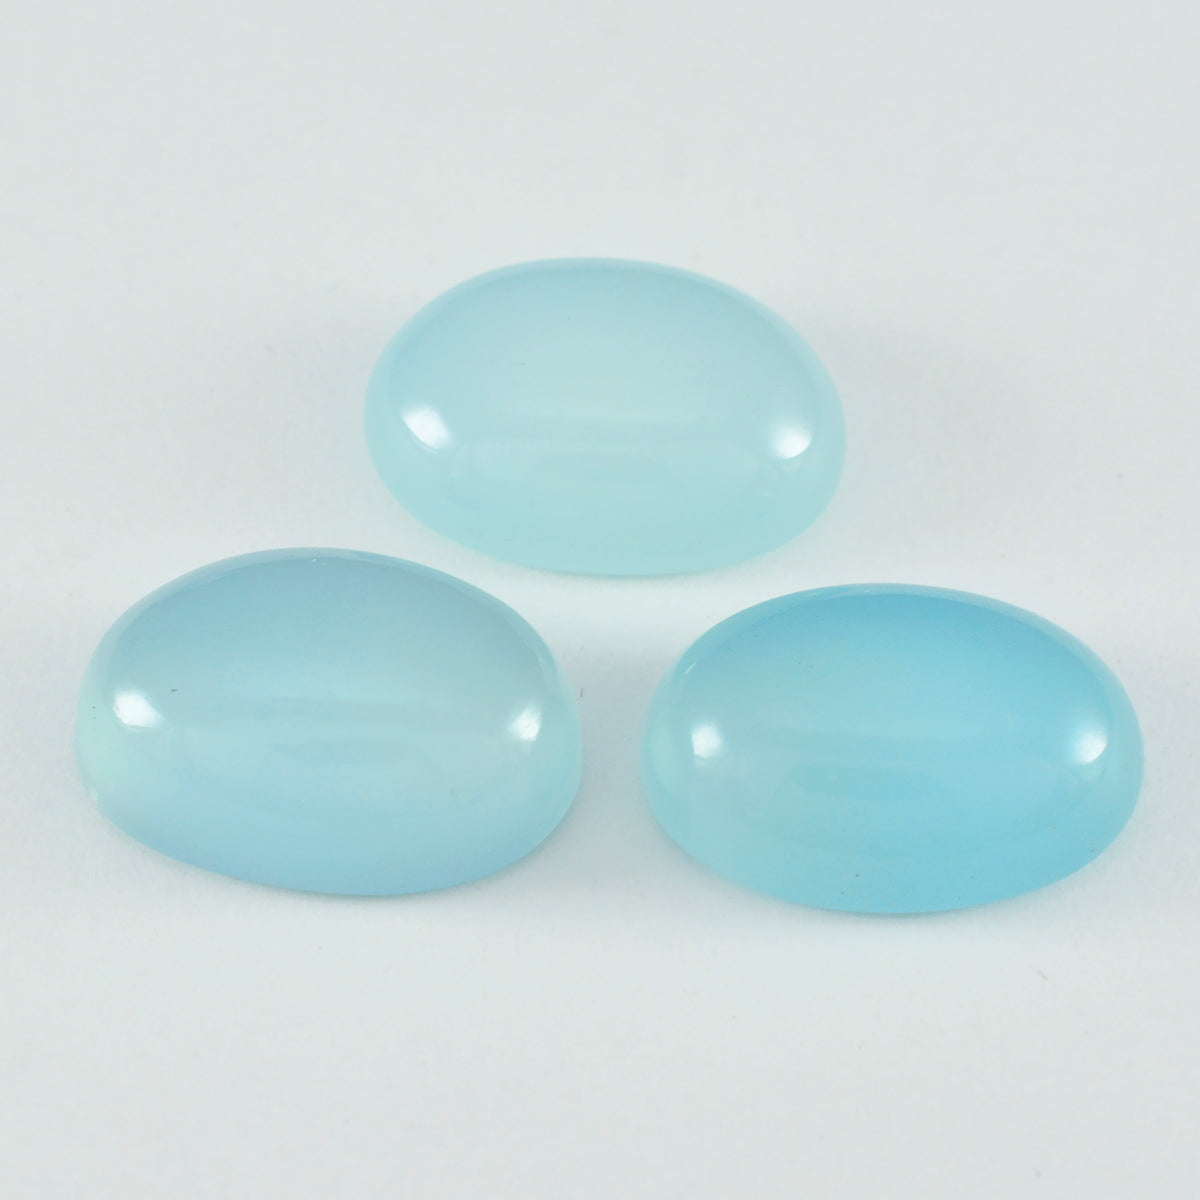 Riyogems 1 Stück Aqua-Chalcedon-Cabochon, 10 x 14 mm, ovale Form, lose Steine von ausgezeichneter Qualität